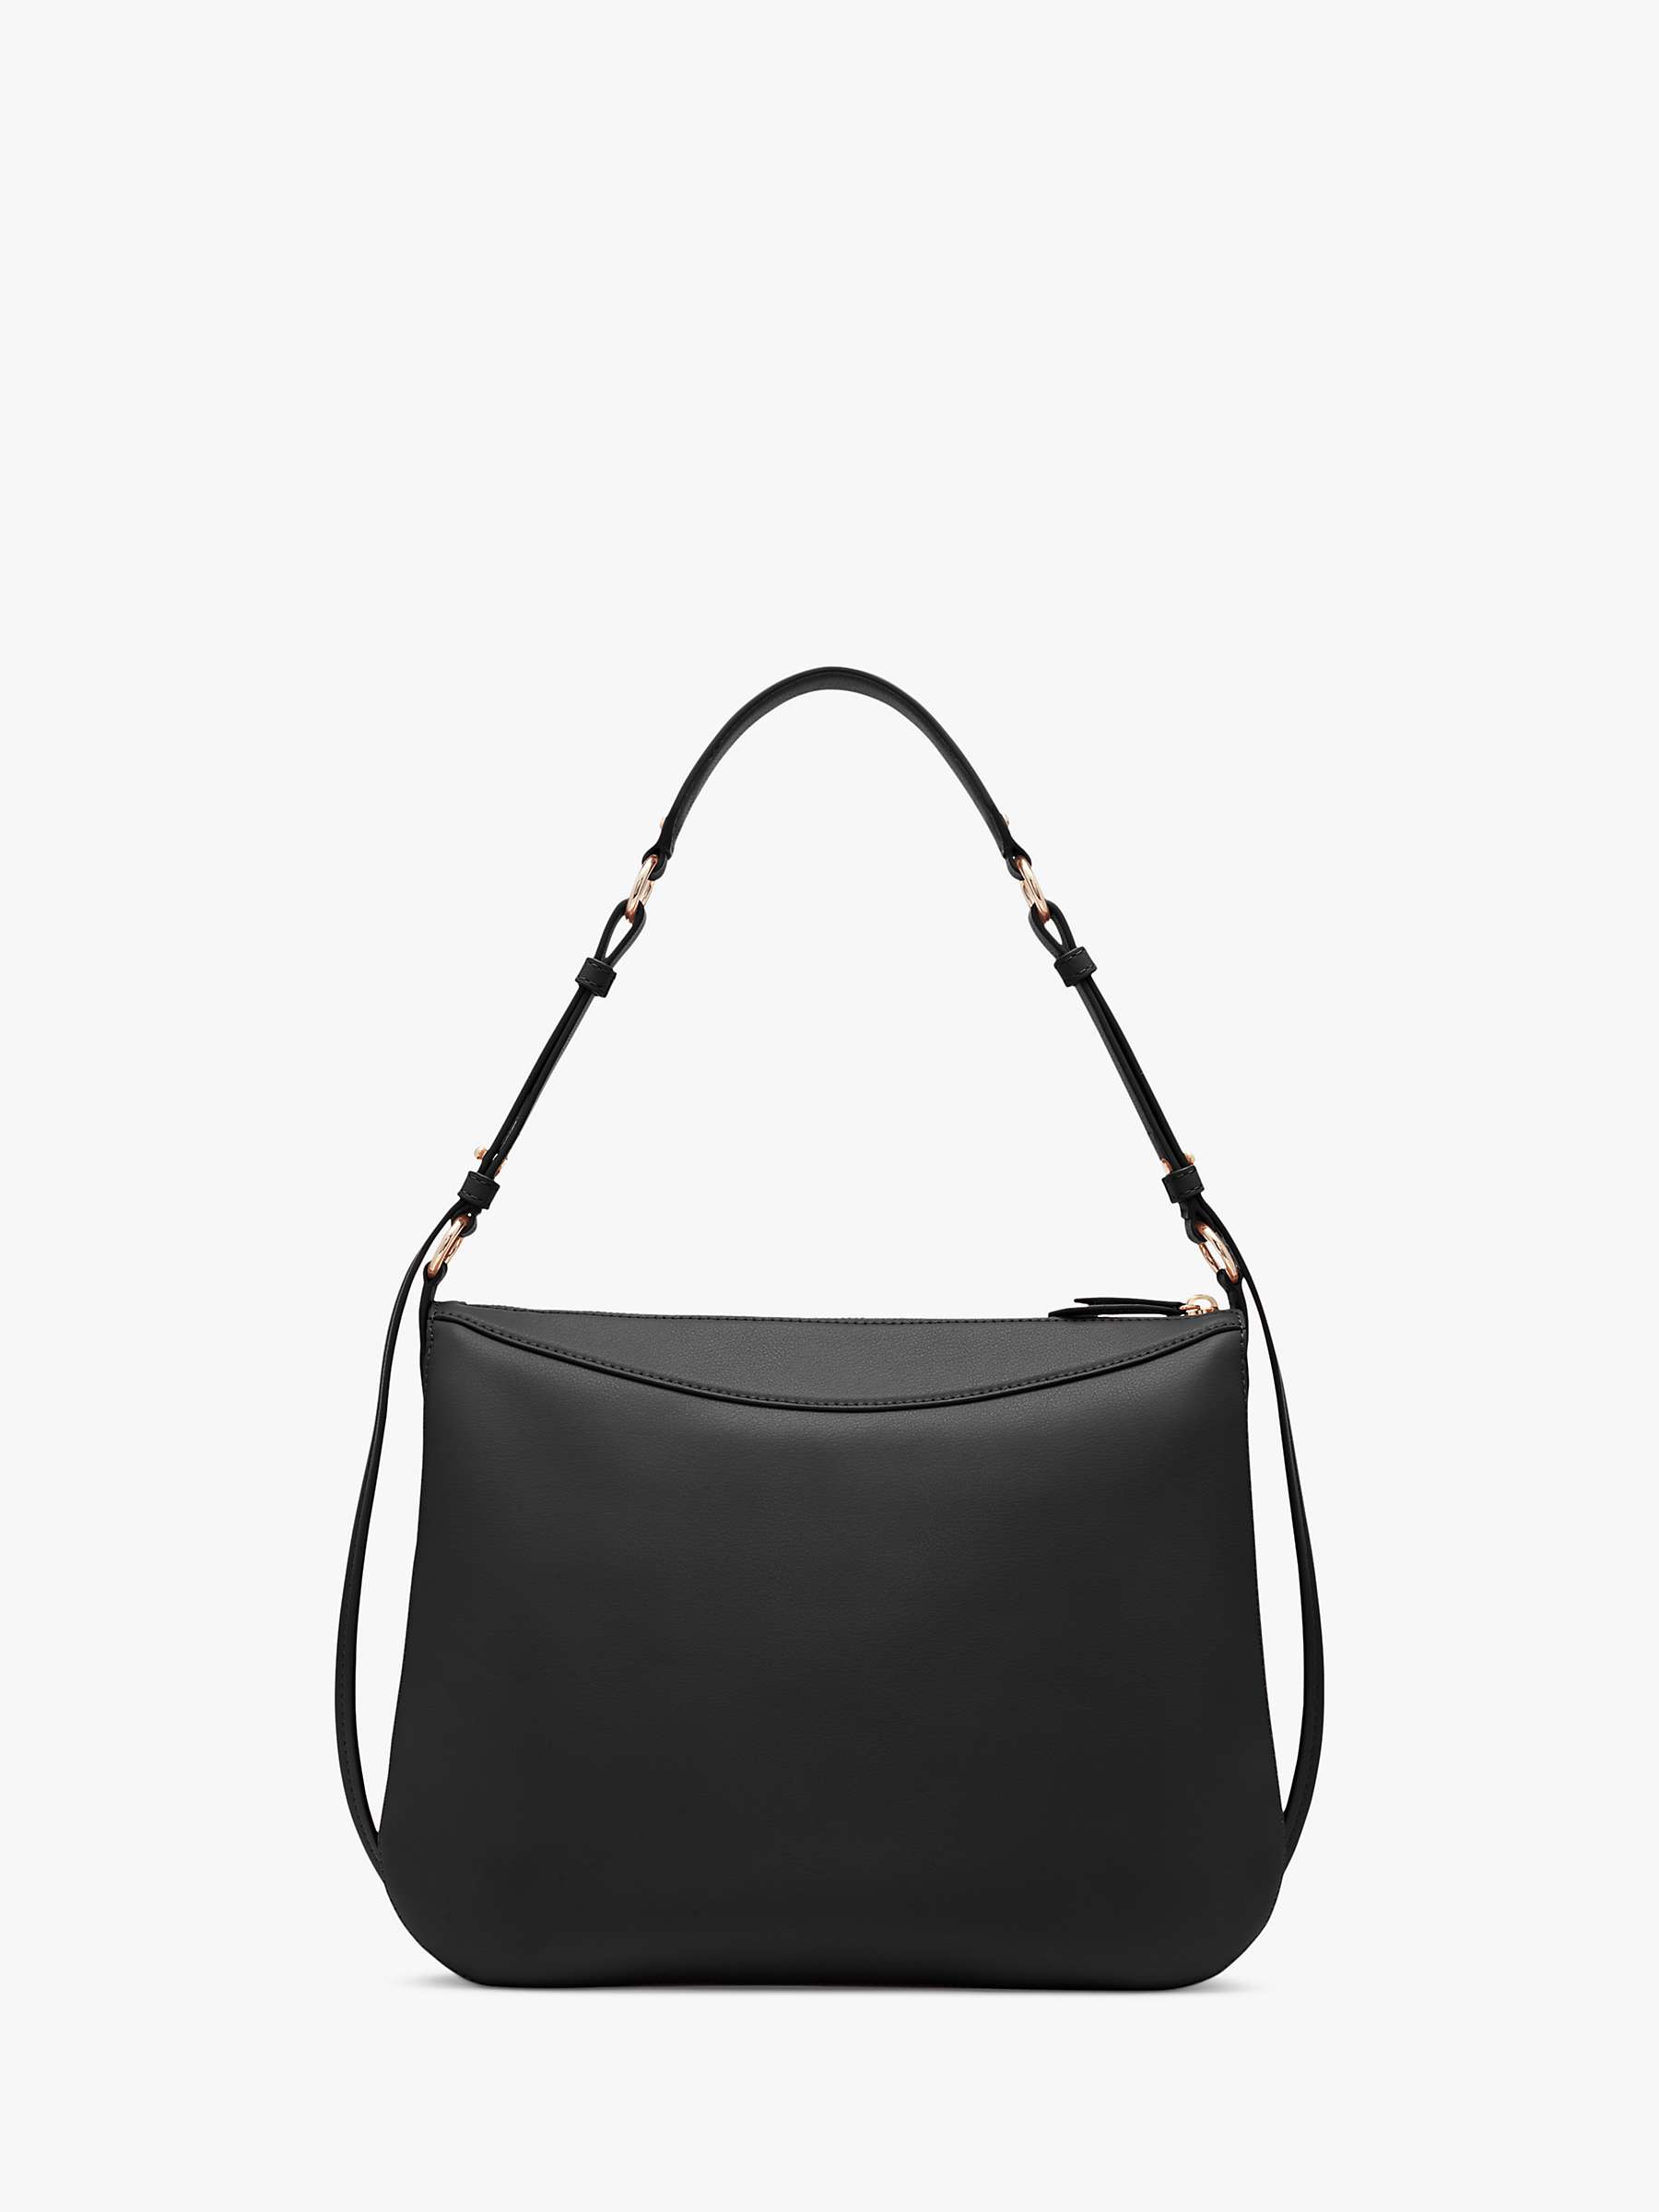 Buy DKNY Hobo Leather Shoulder Bag, Black Online at johnlewis.com